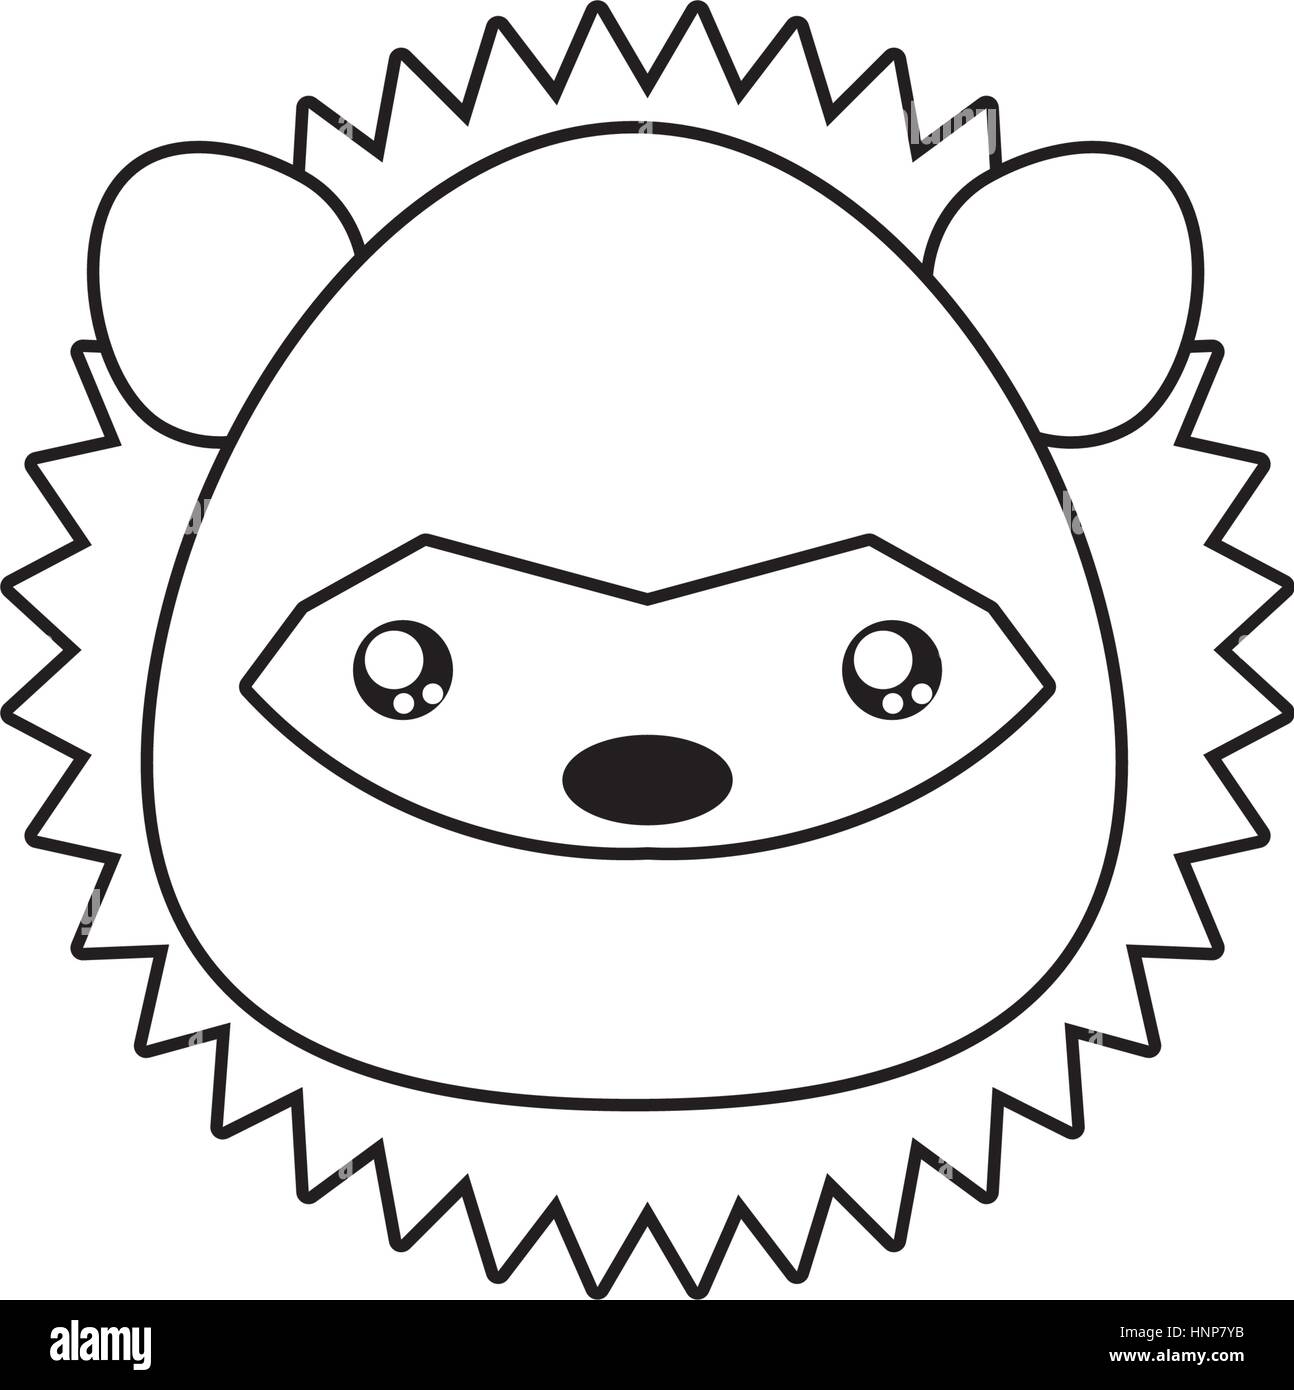 how to draw a cartoon porcupine